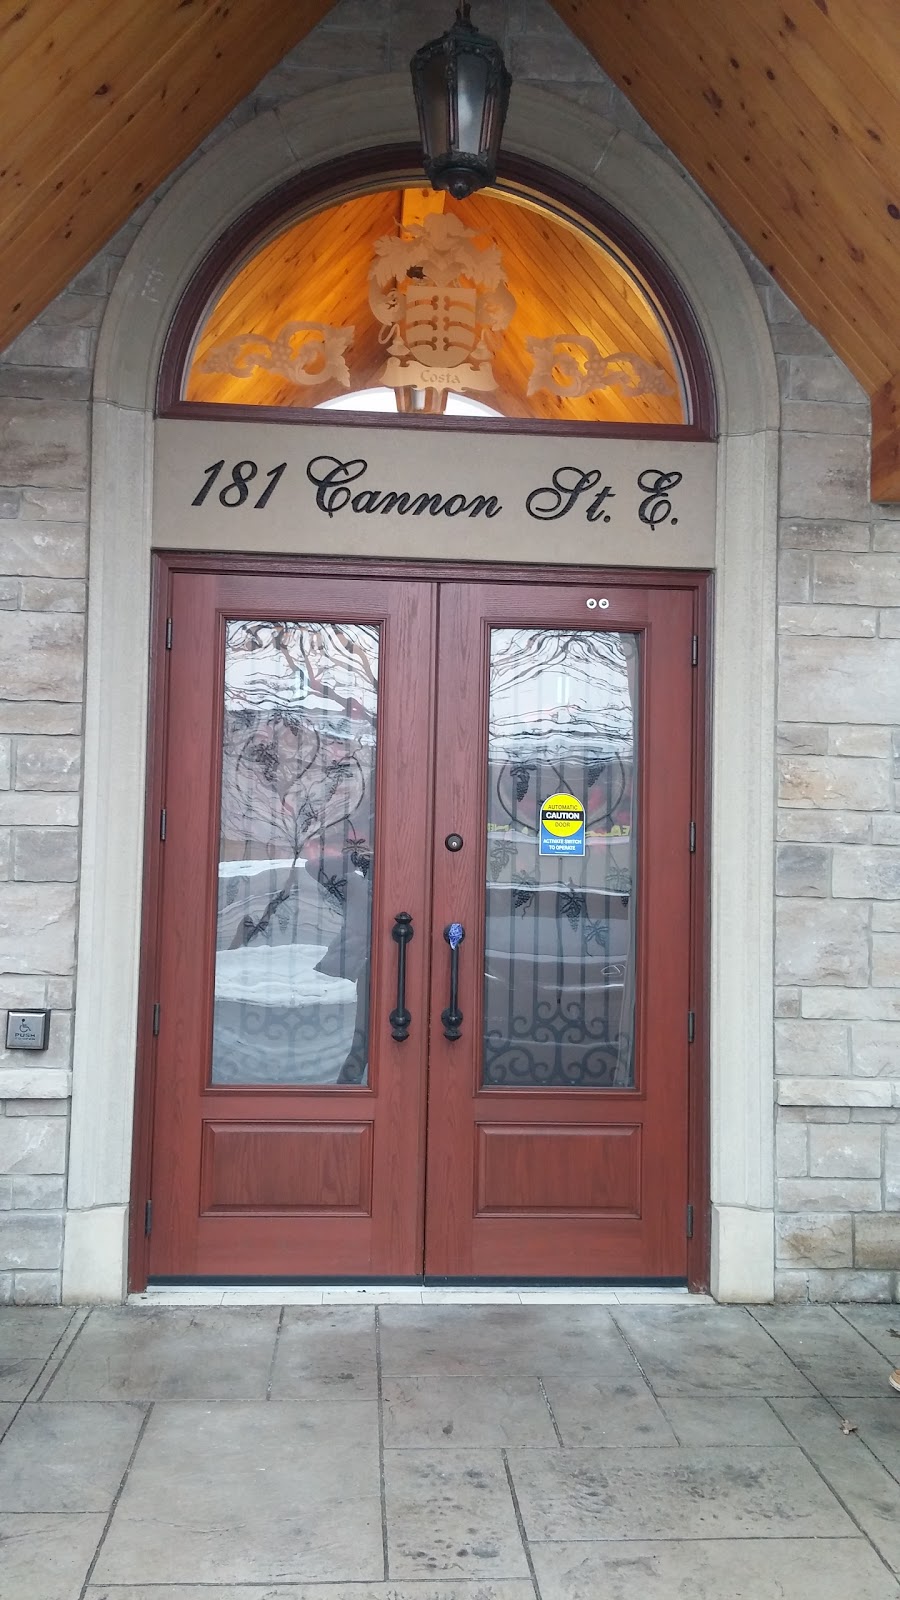 Costas Wine Country Inc. | Canada, 181 Cannon St E, Hamilton, ON L8L 2A7, Canada | Phone: (905) 525-7088